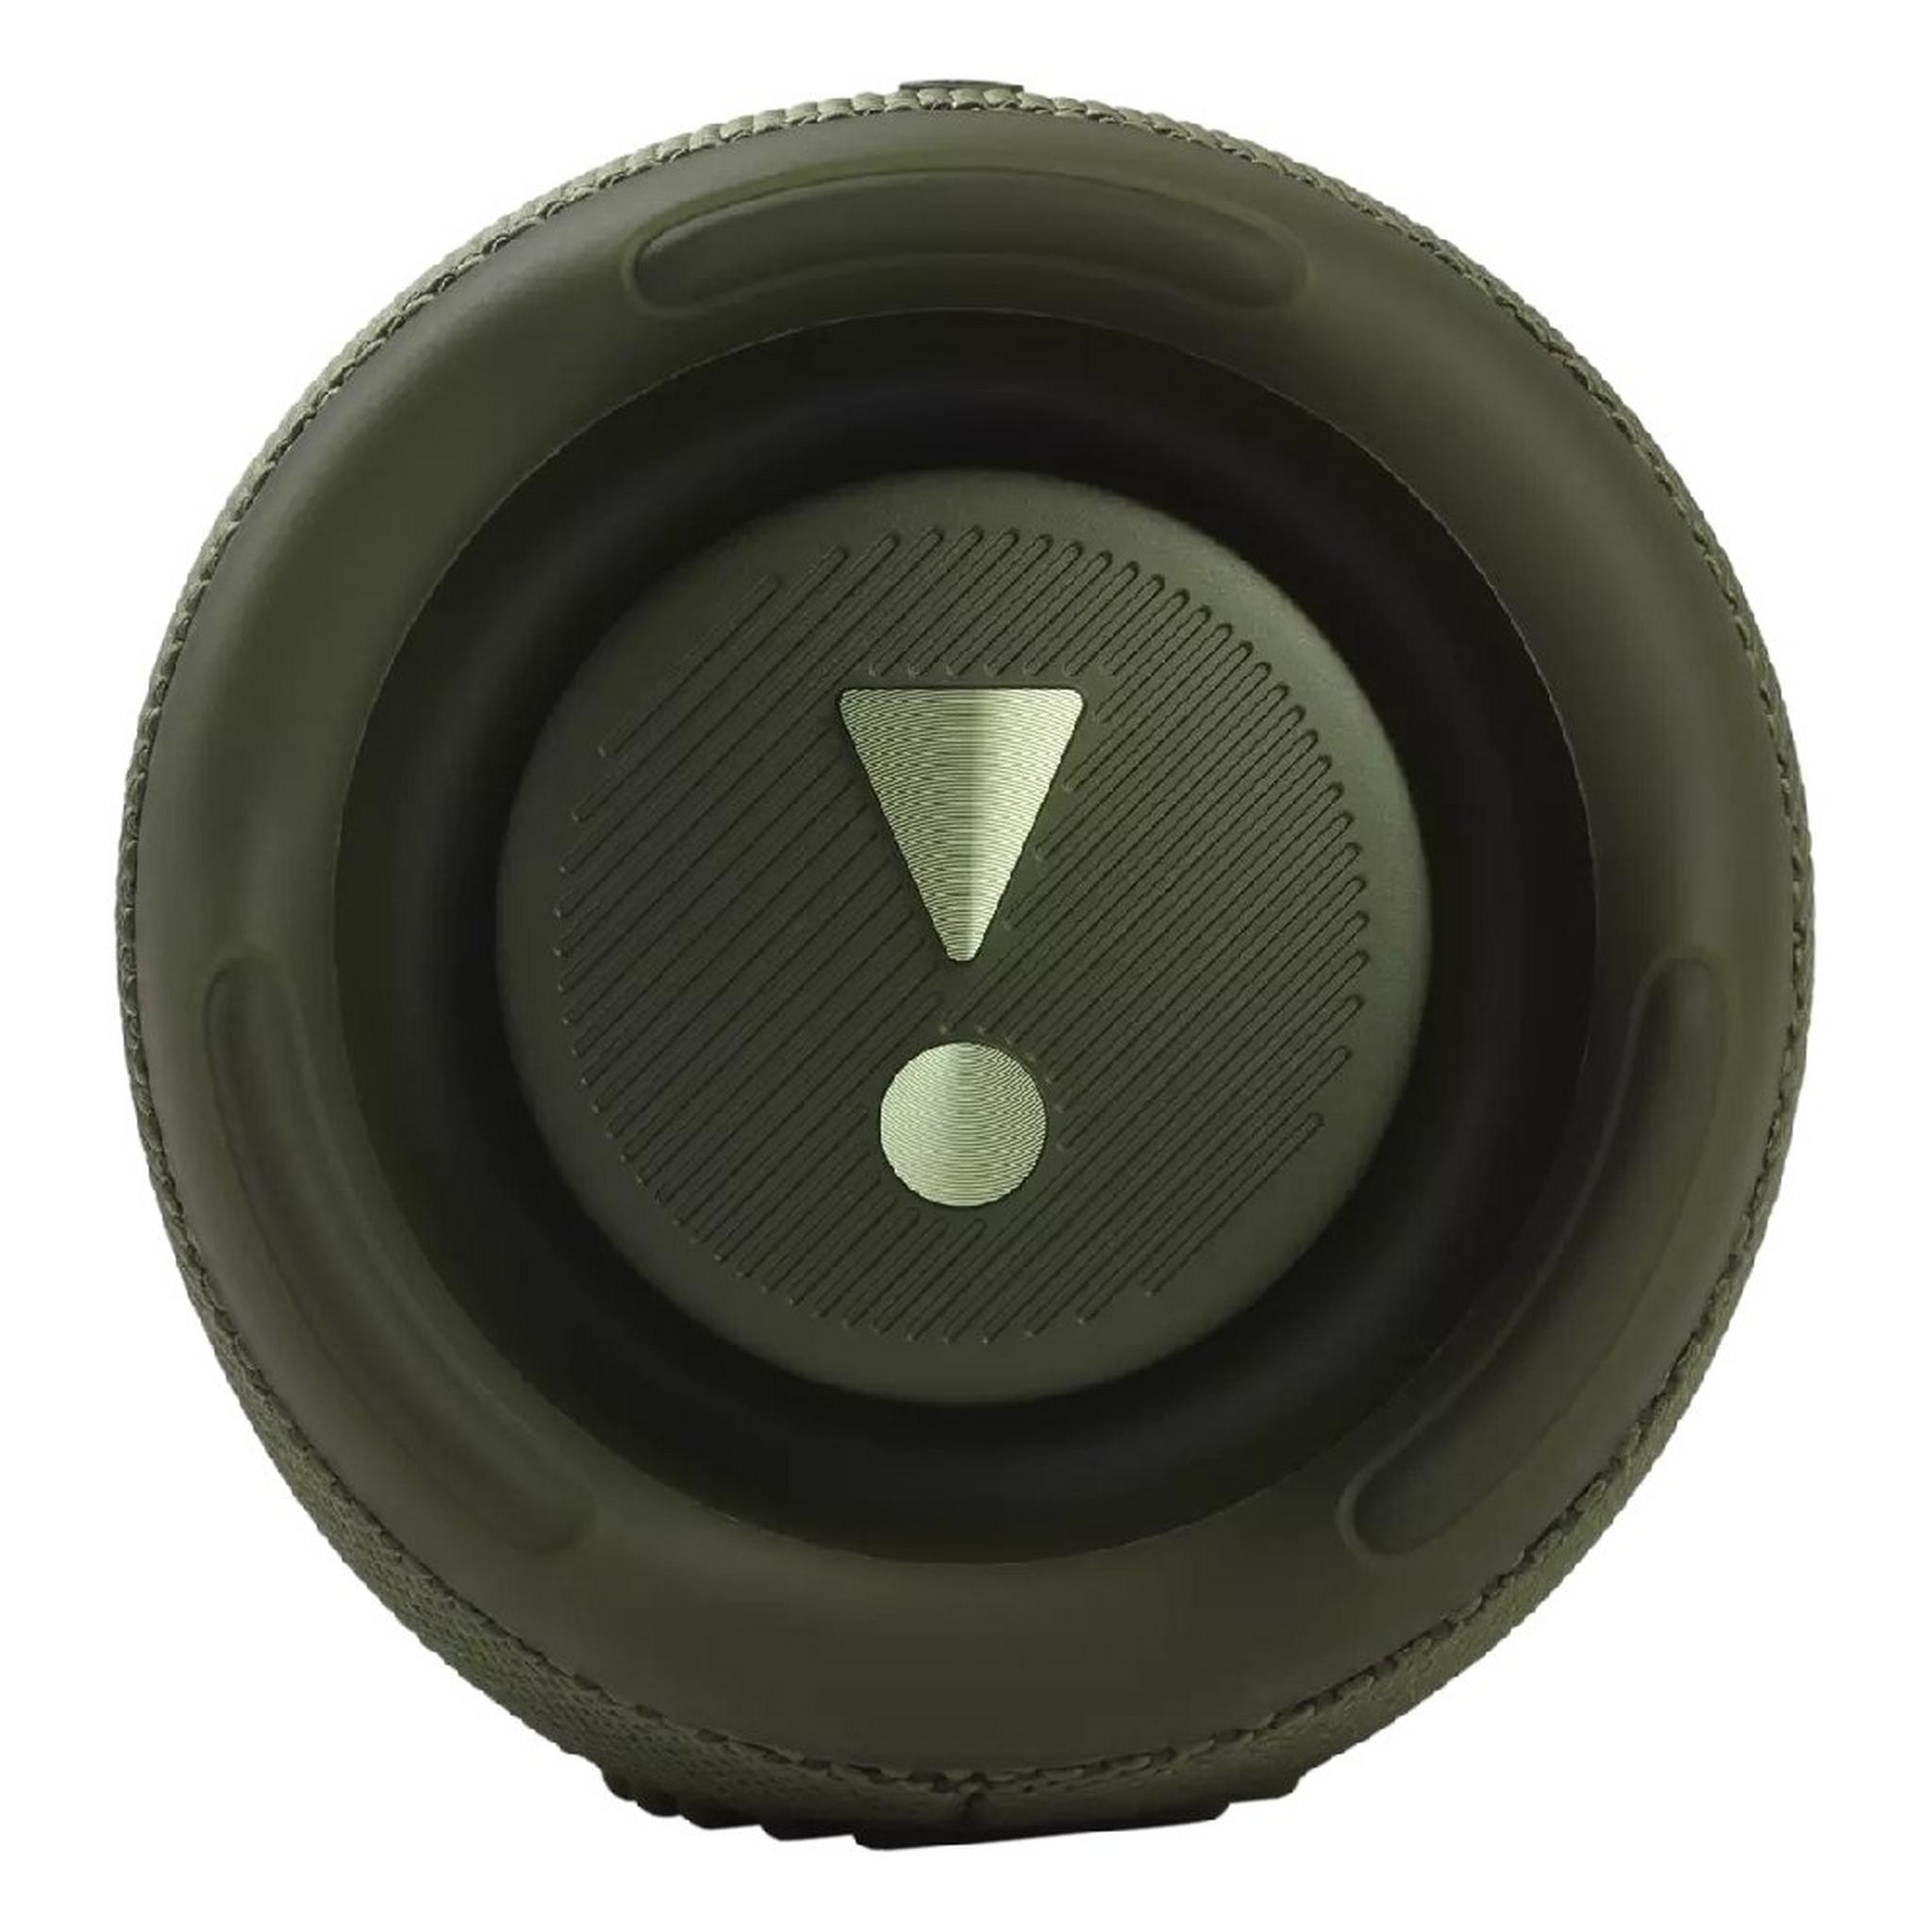 JBL Charge 5 Waterproof Wireless Speaker - Green